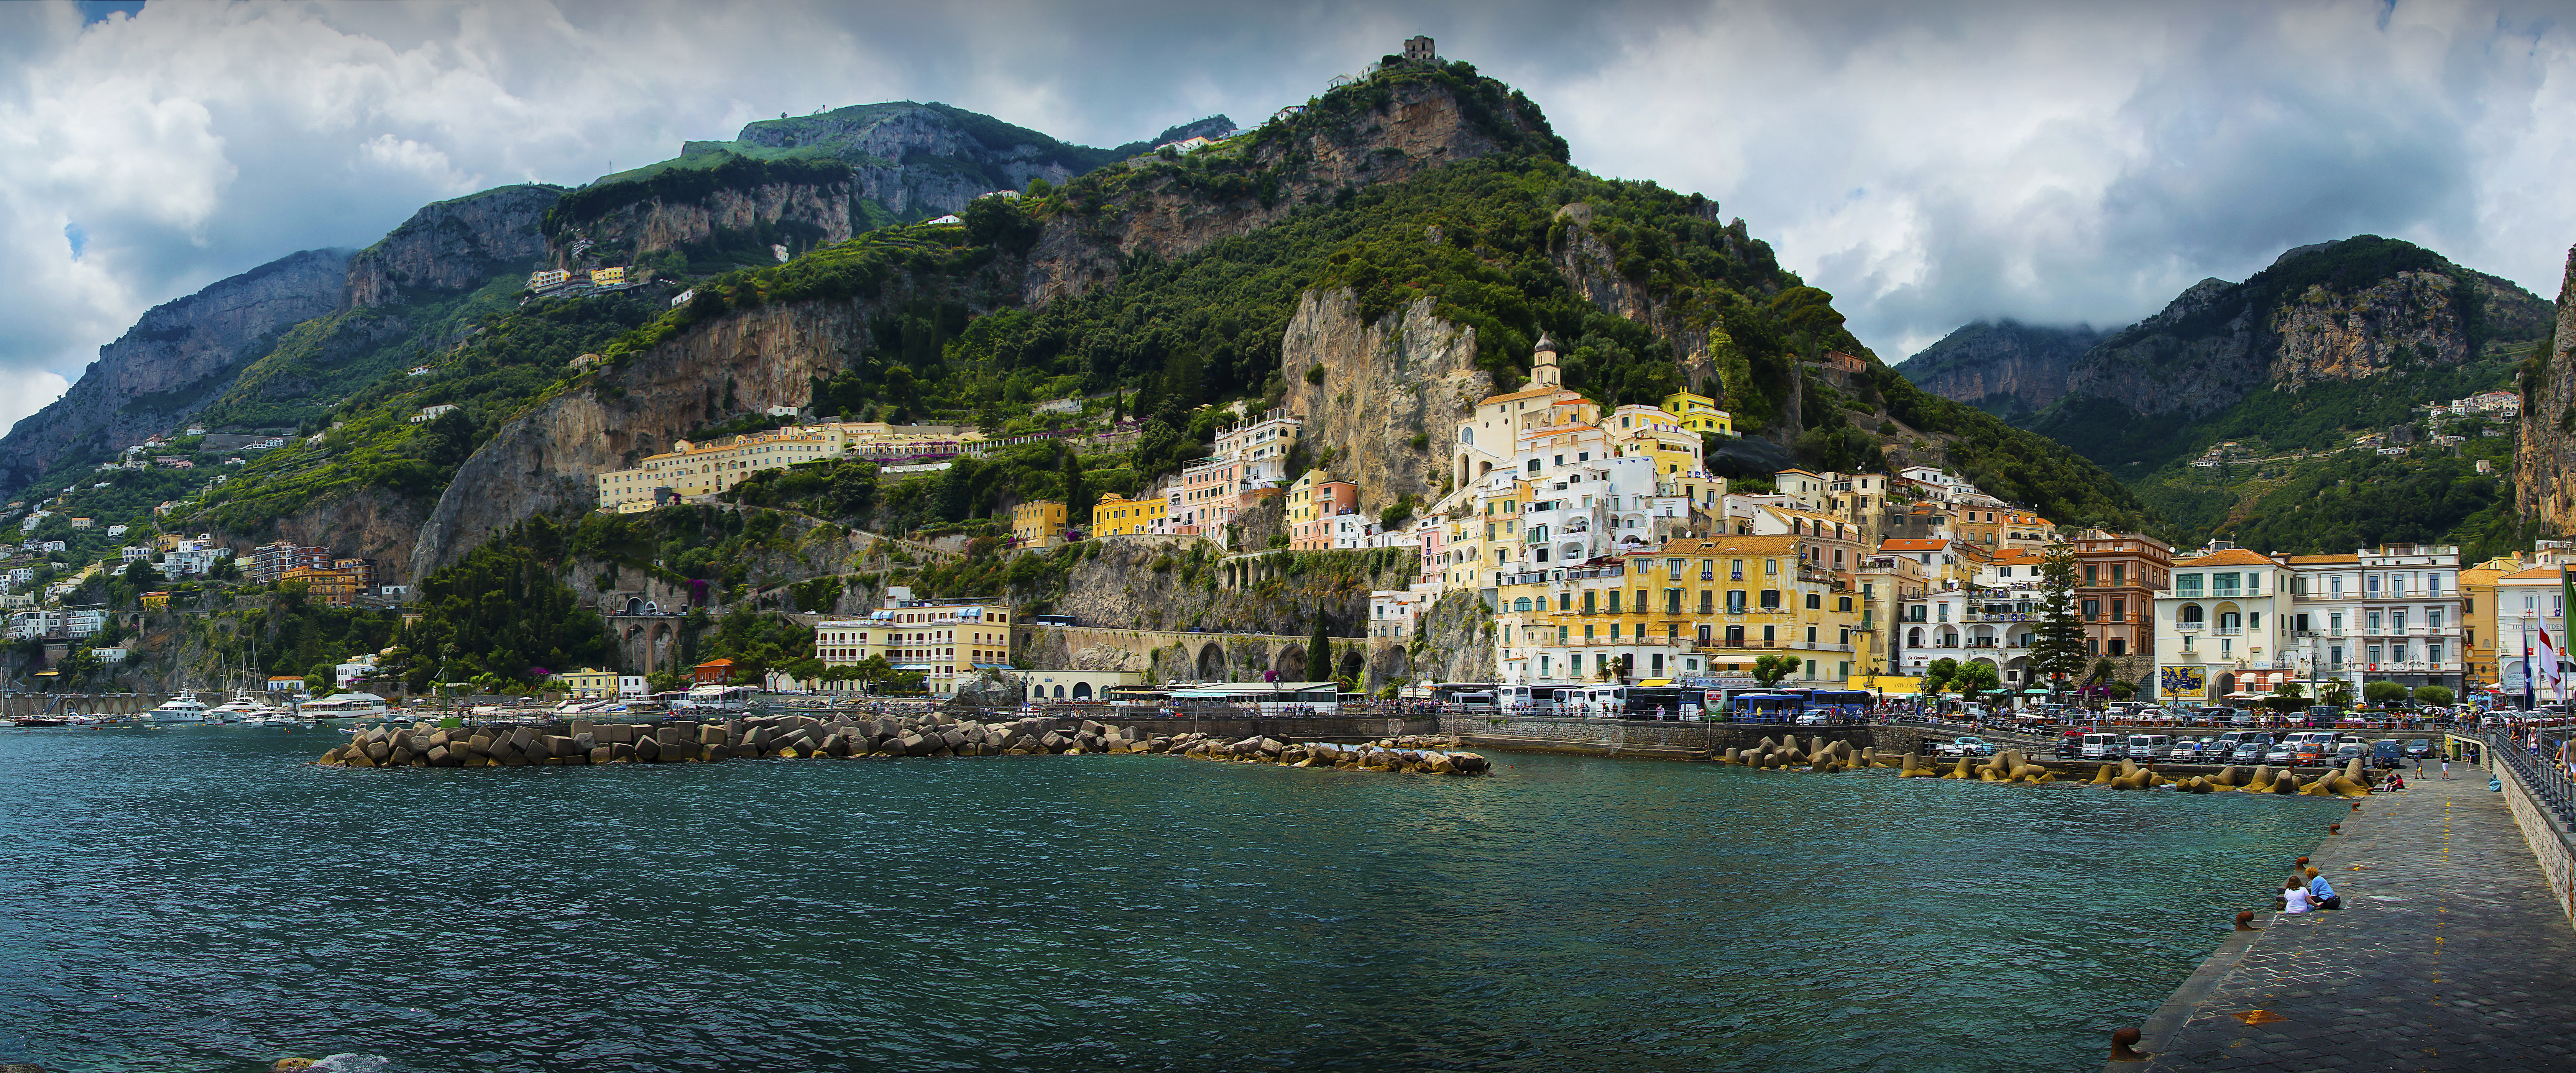 Amalfi Mountain House Italy Coast Town 6720x2800